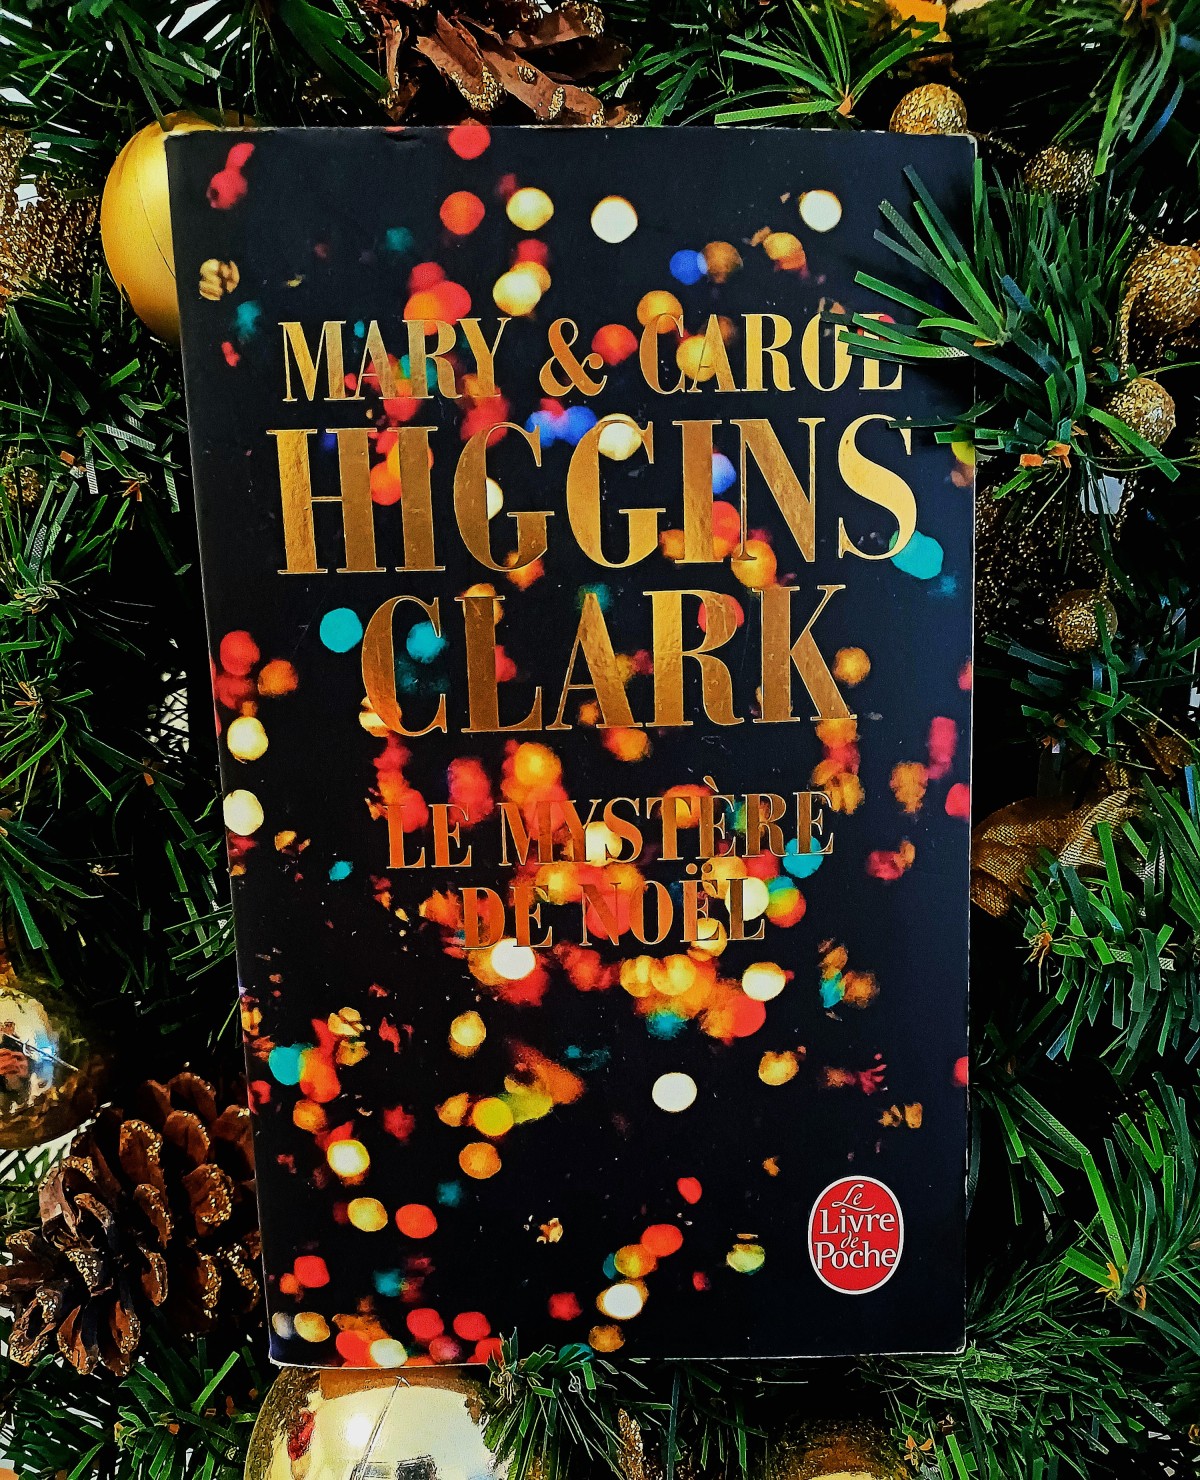 Le Mystère de Noël (2008), Mary et Carol Higgins Clark